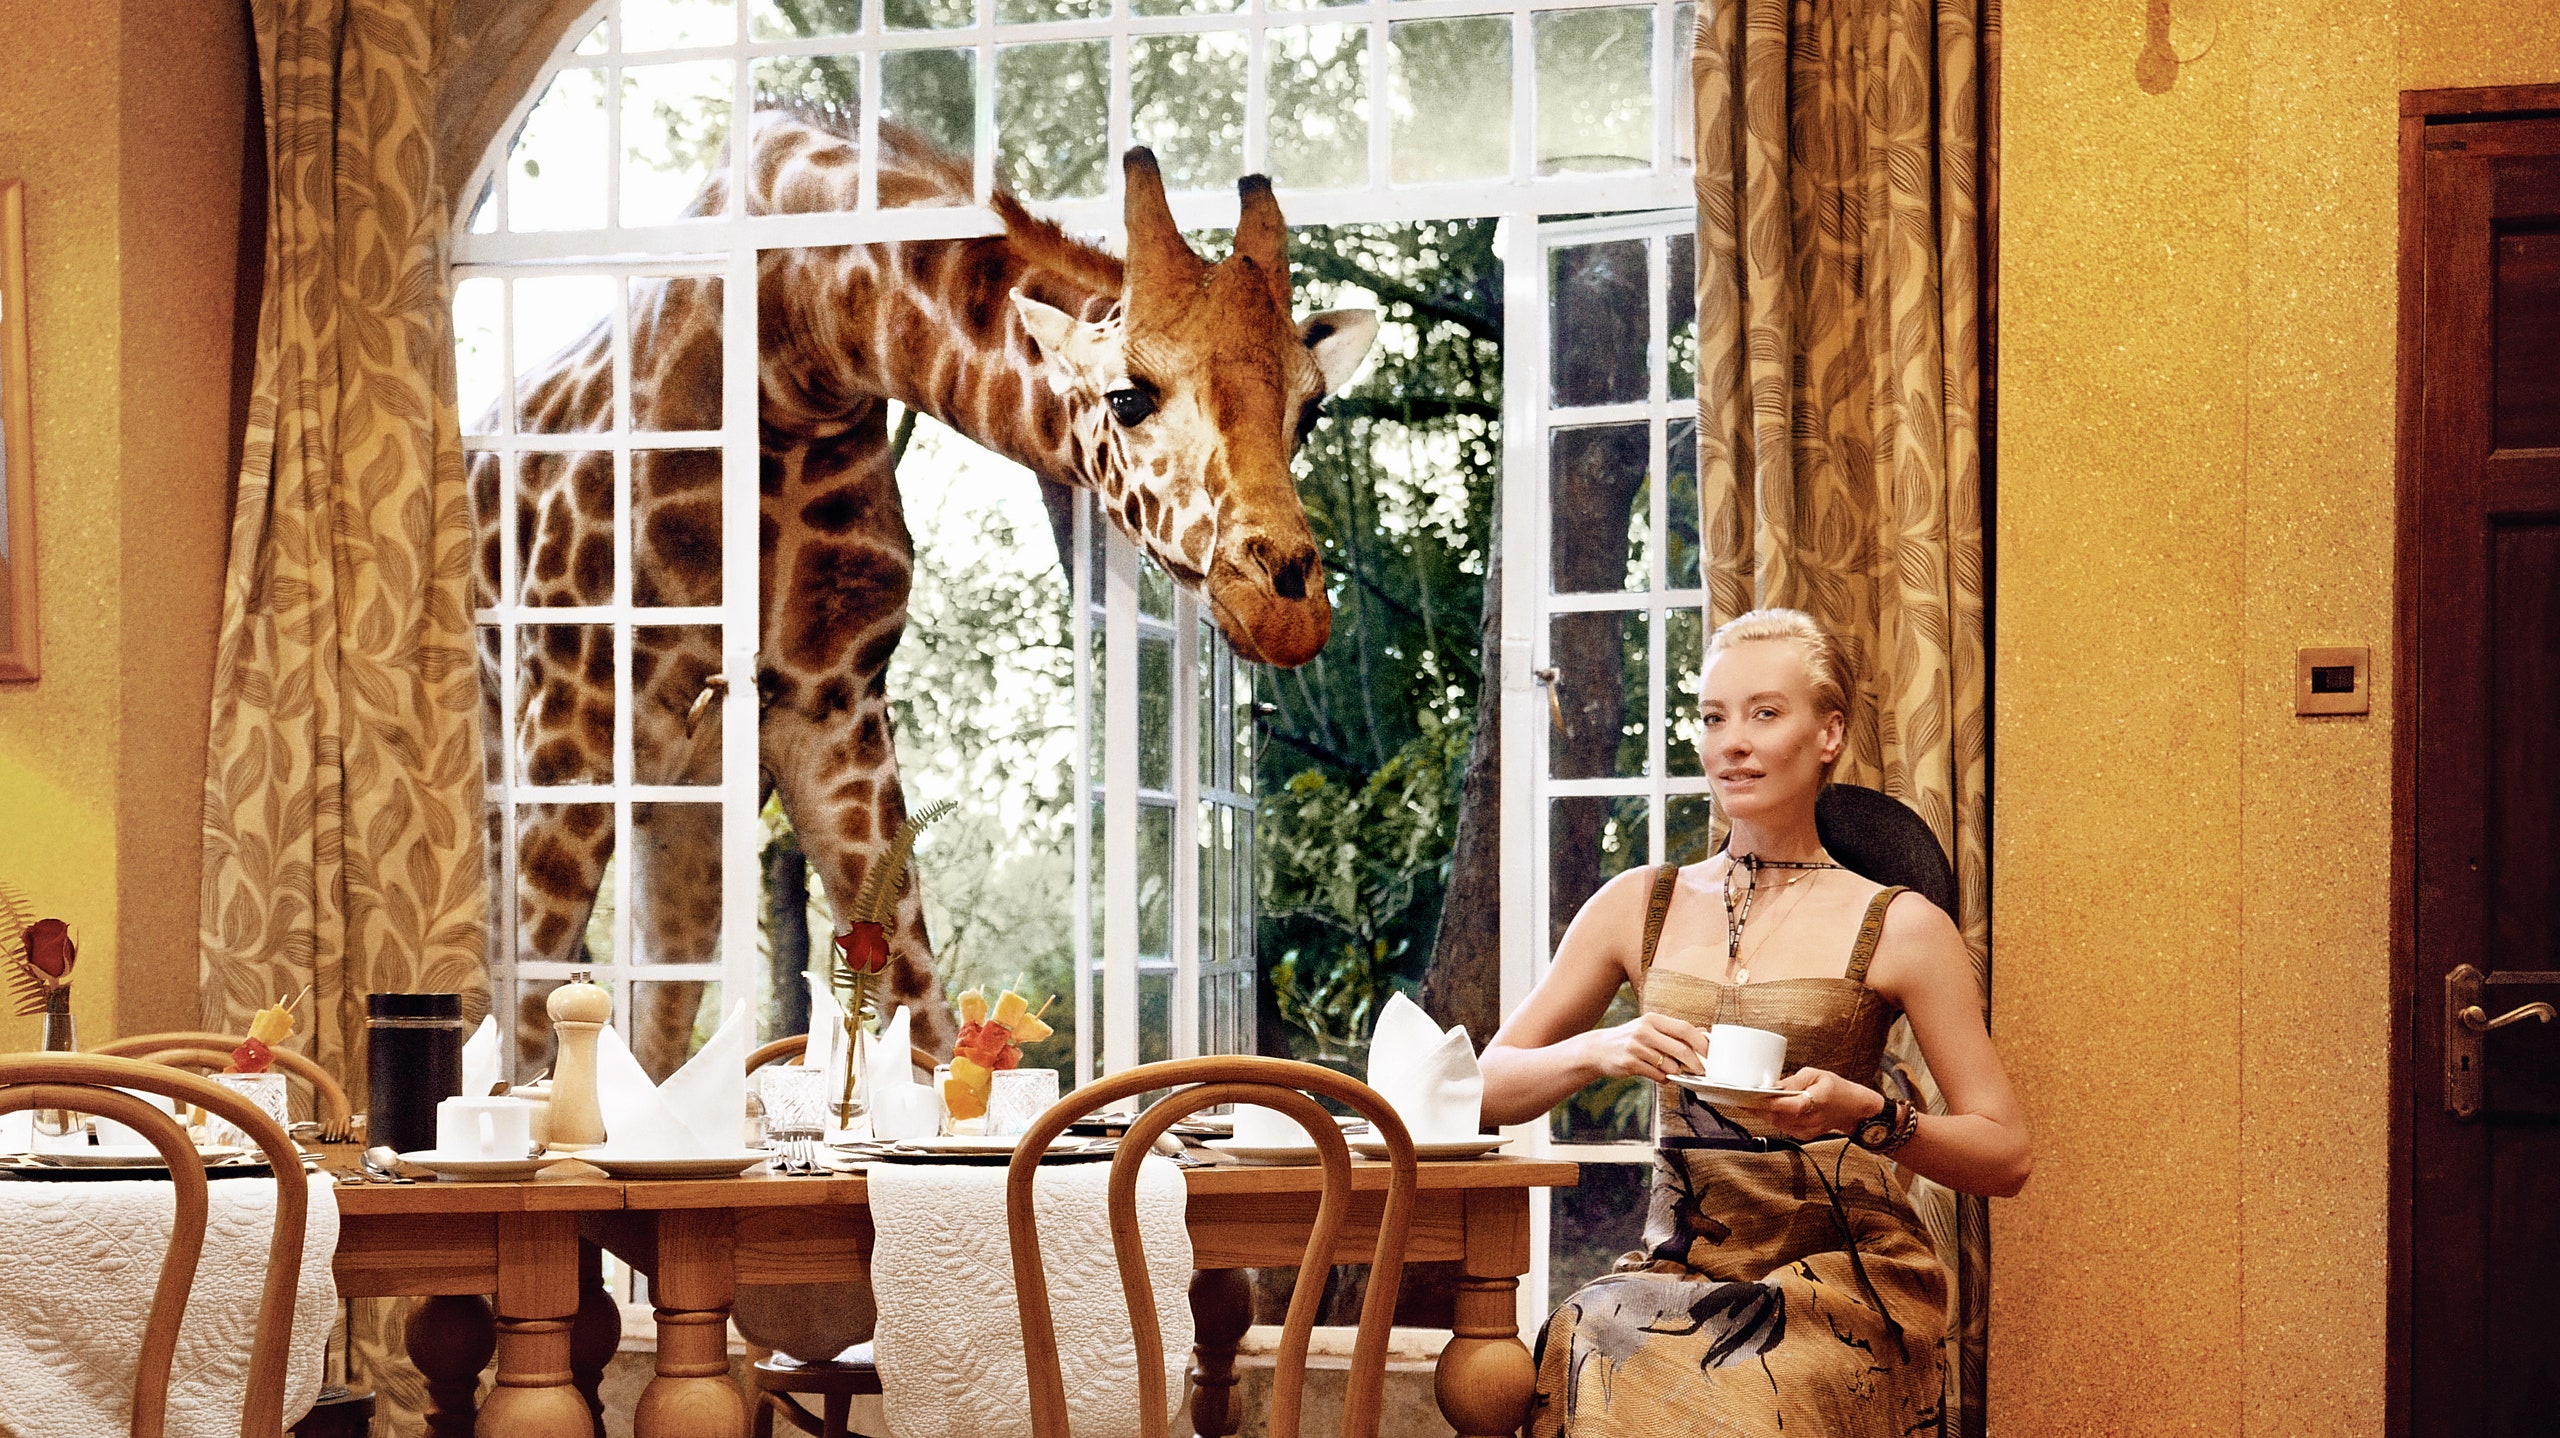 Наталья Давыдова фото и завтрак с жирафами